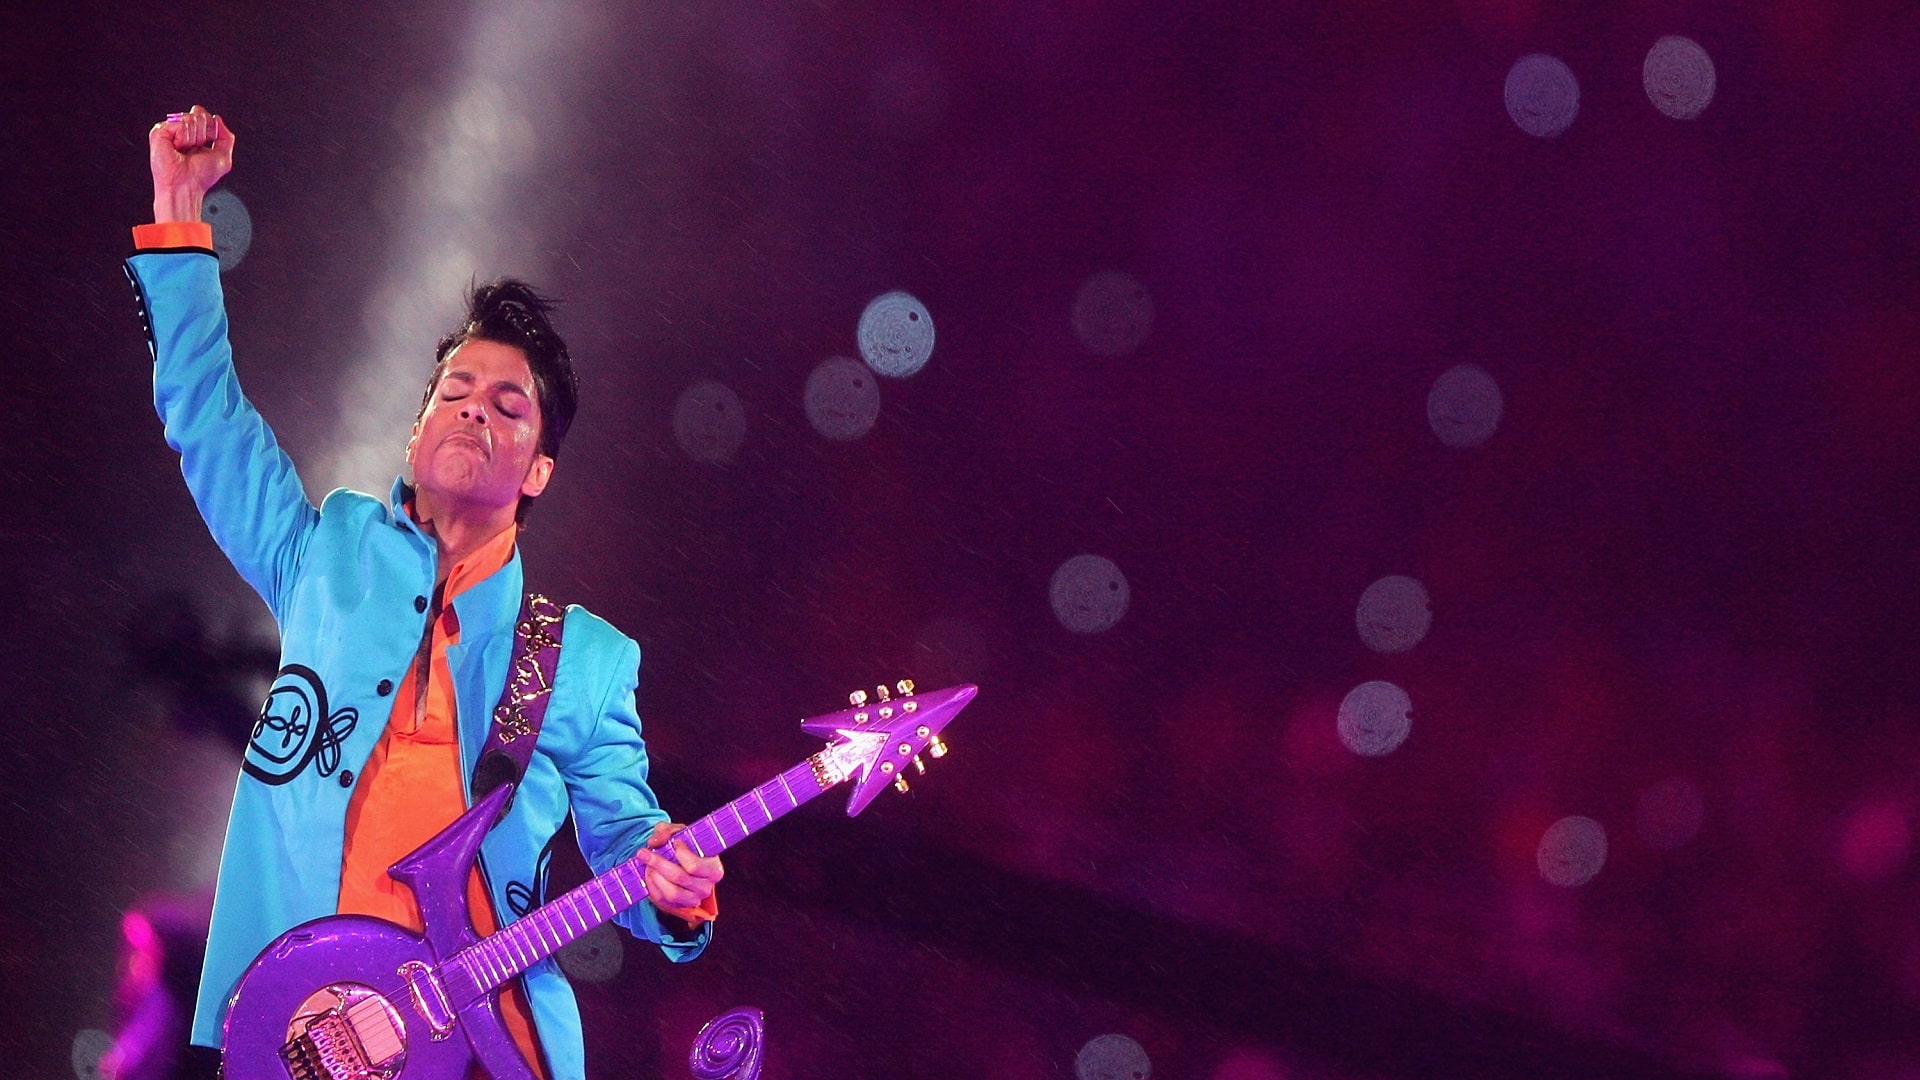 Sale a la luz 'Cosmic Day', canción inédita de Prince